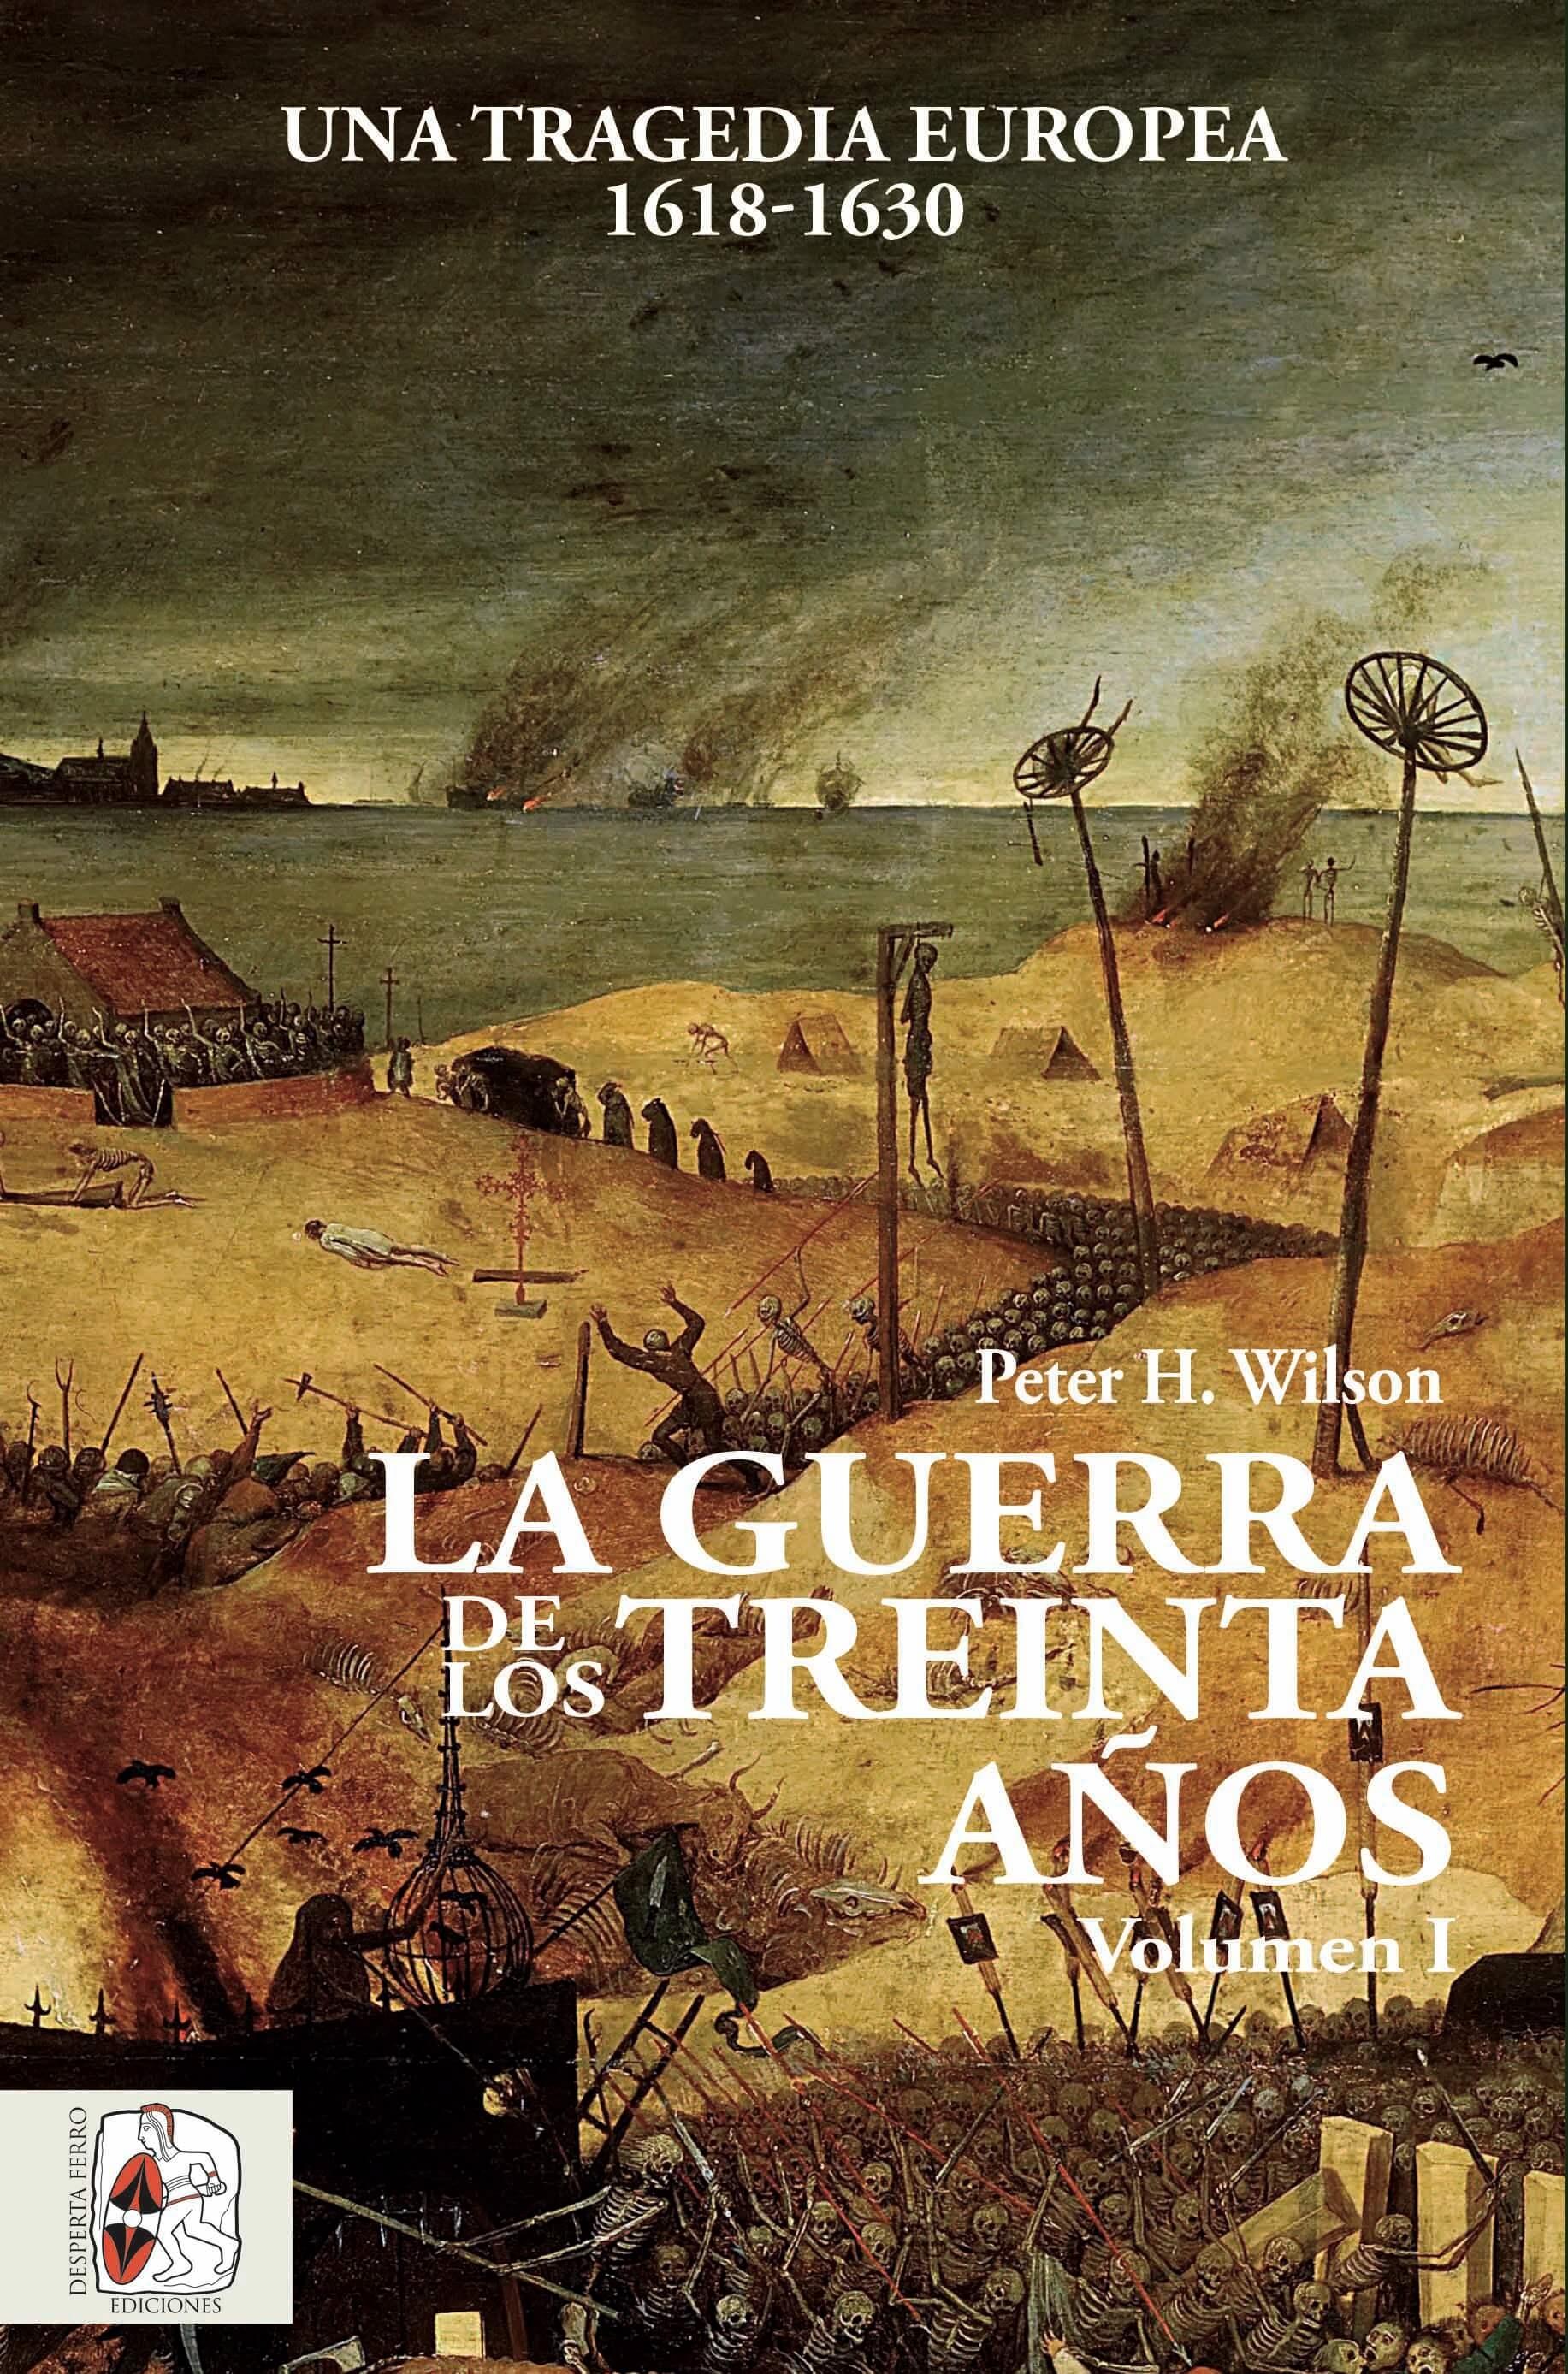 La Guerra de los Treinta Años Vol.I "Una tragedia europea 1618-1630"